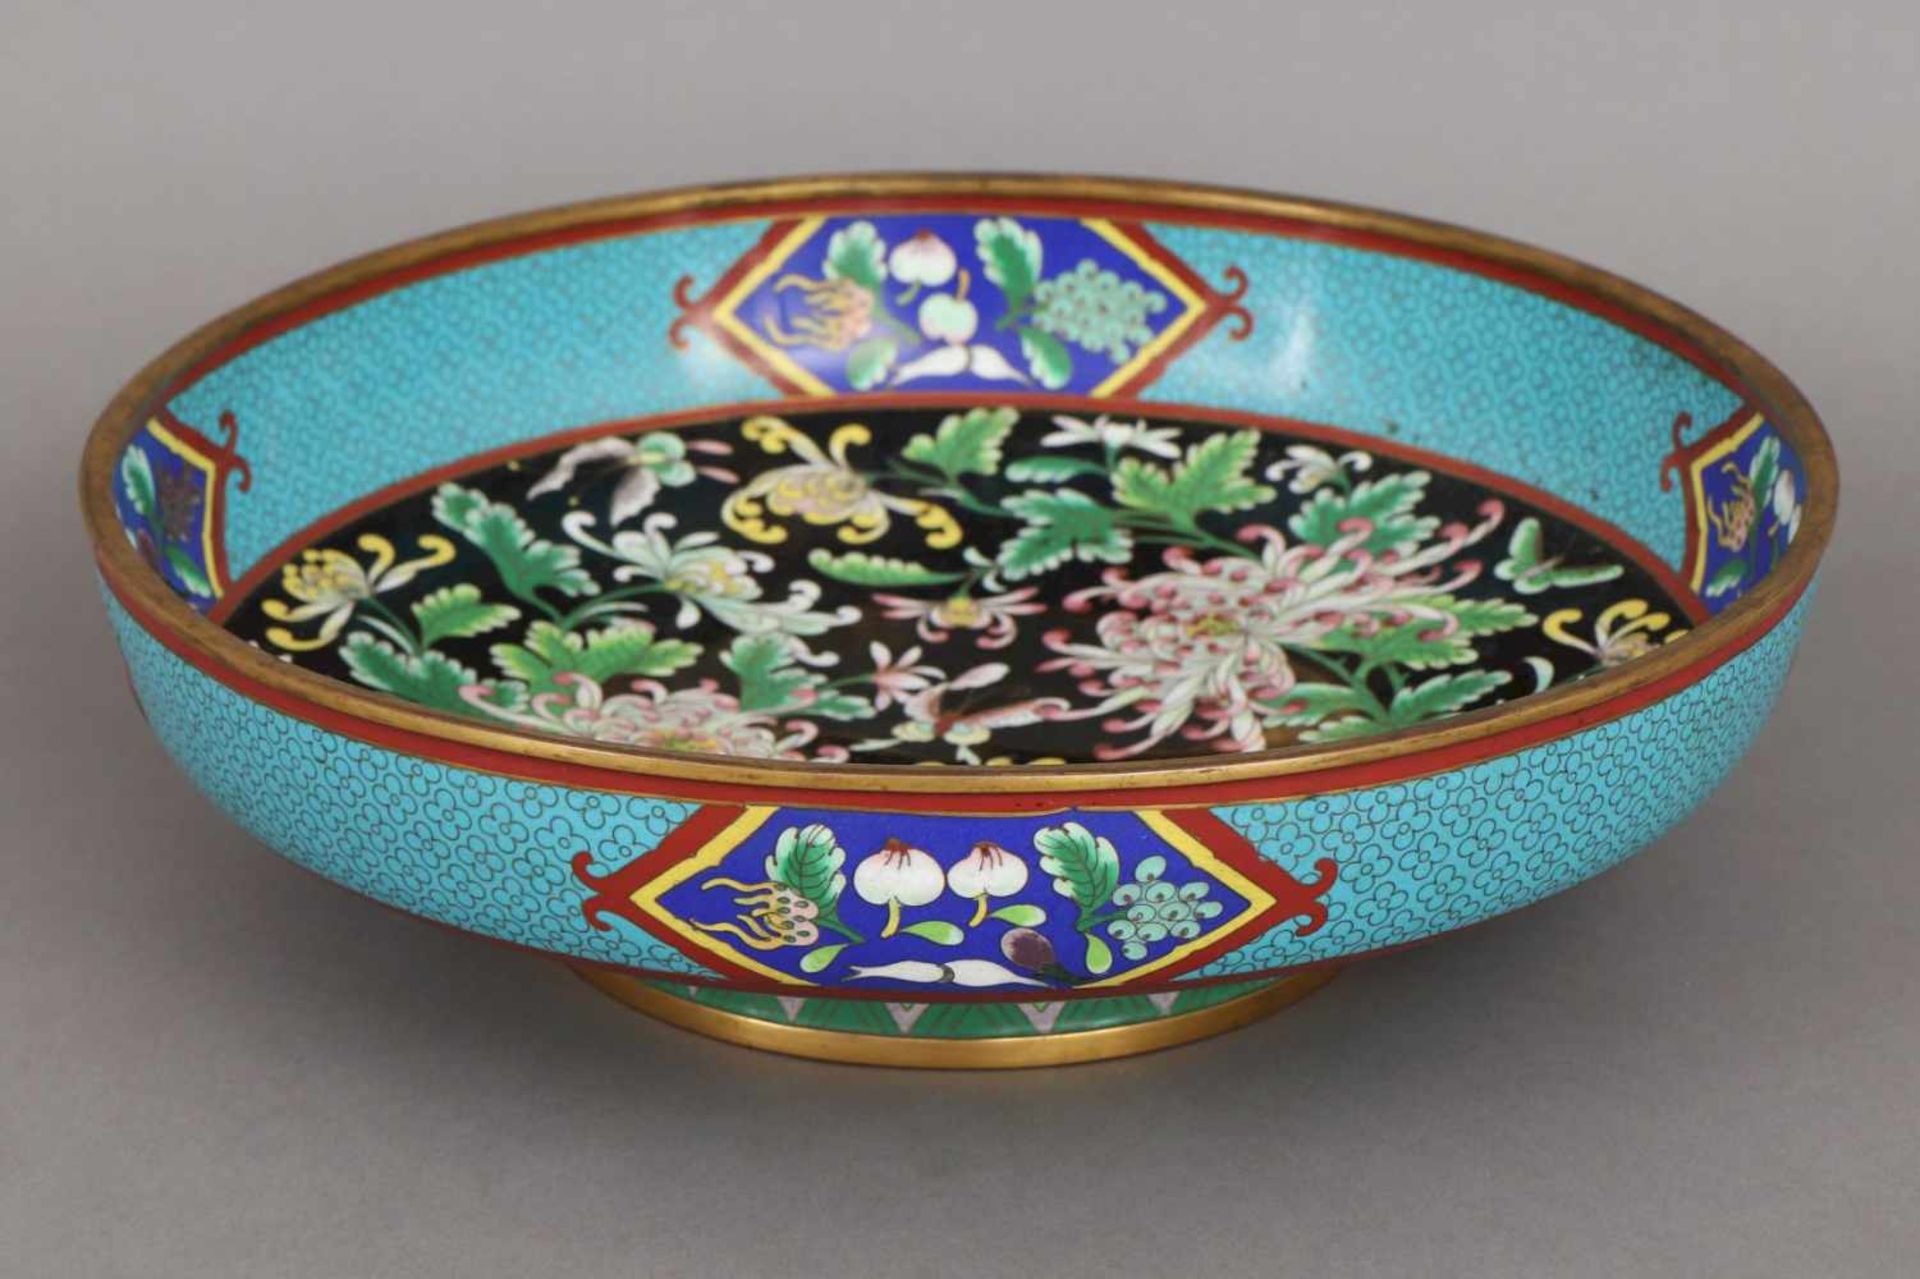 Große Cloisonée Schale der Qing Dynastie (1644-1912) Päonien- und Schmetterlingsdekor in